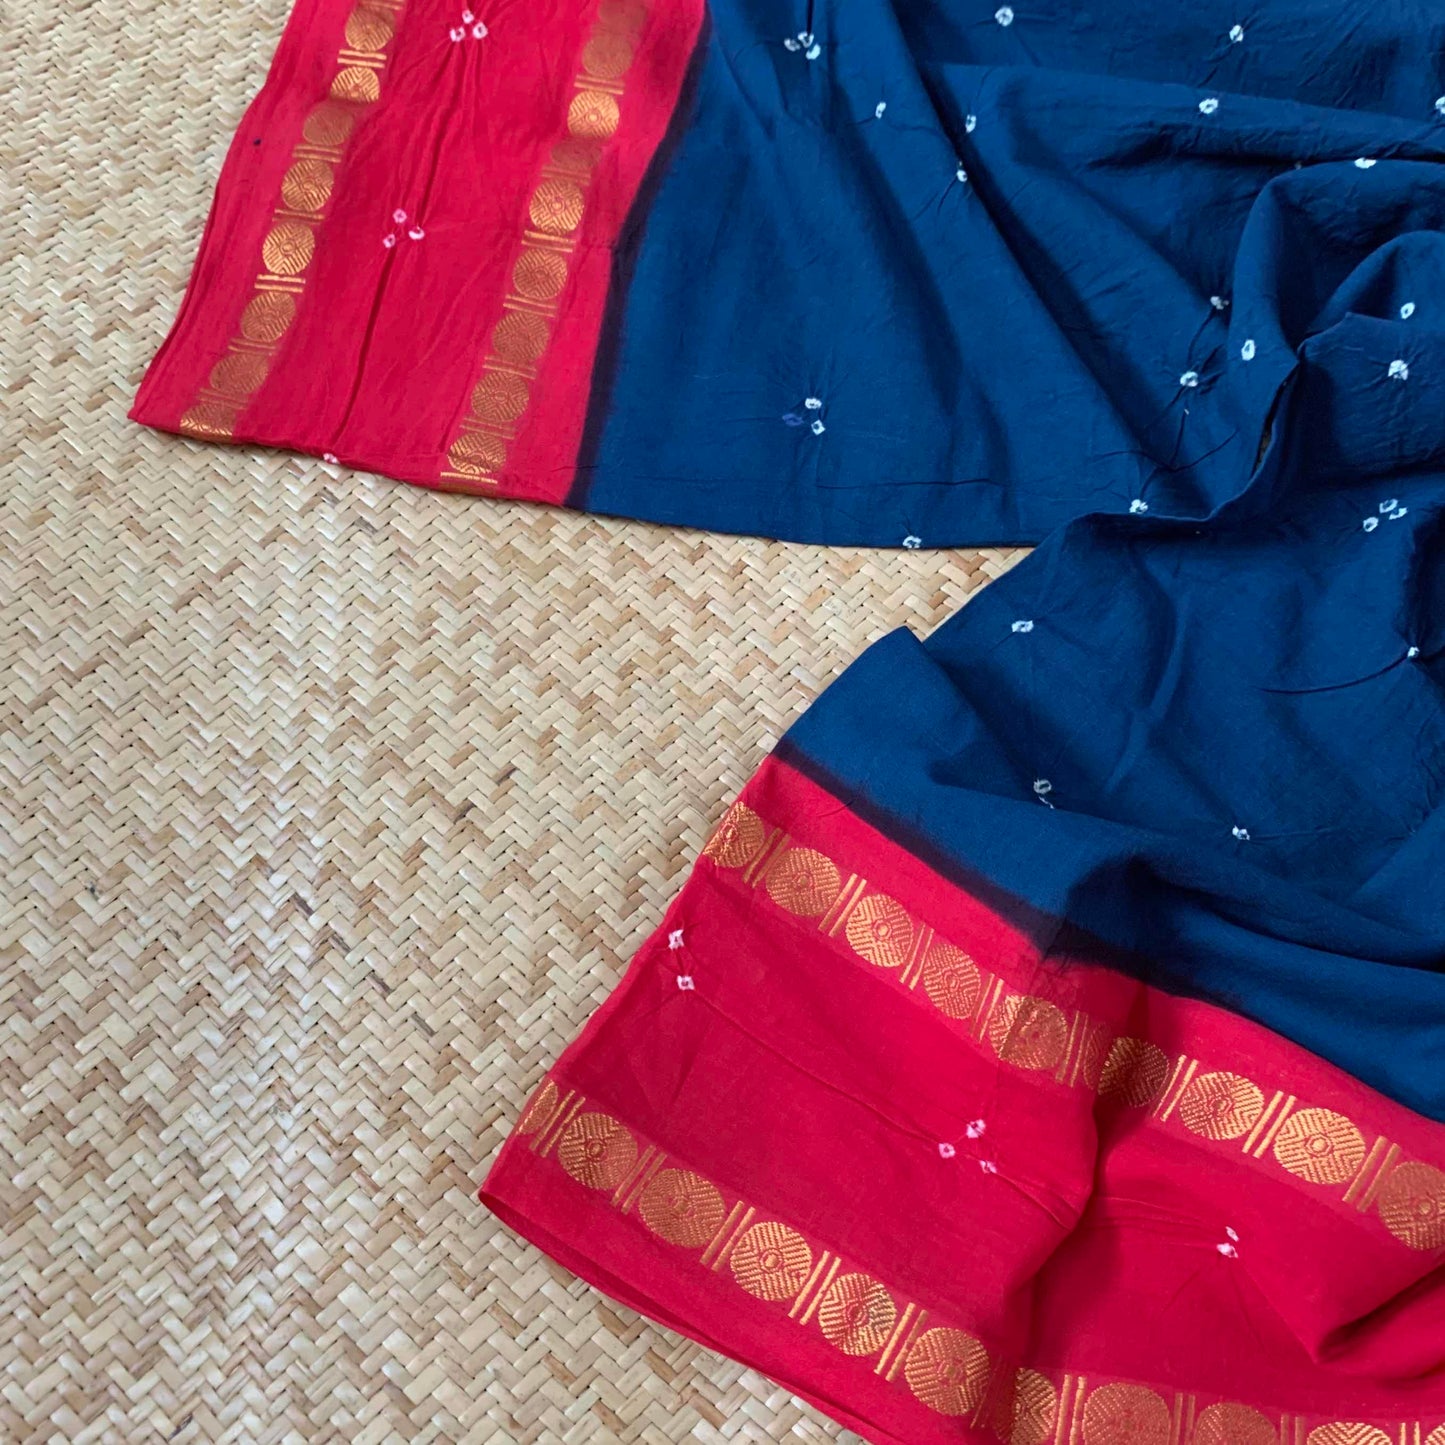 Rama Blue Saree Pinkish Maroon Border, Hand knotted Sungudi On Rudraksham Border Non-Starch Cotton saree, Kaikattu Sungadi